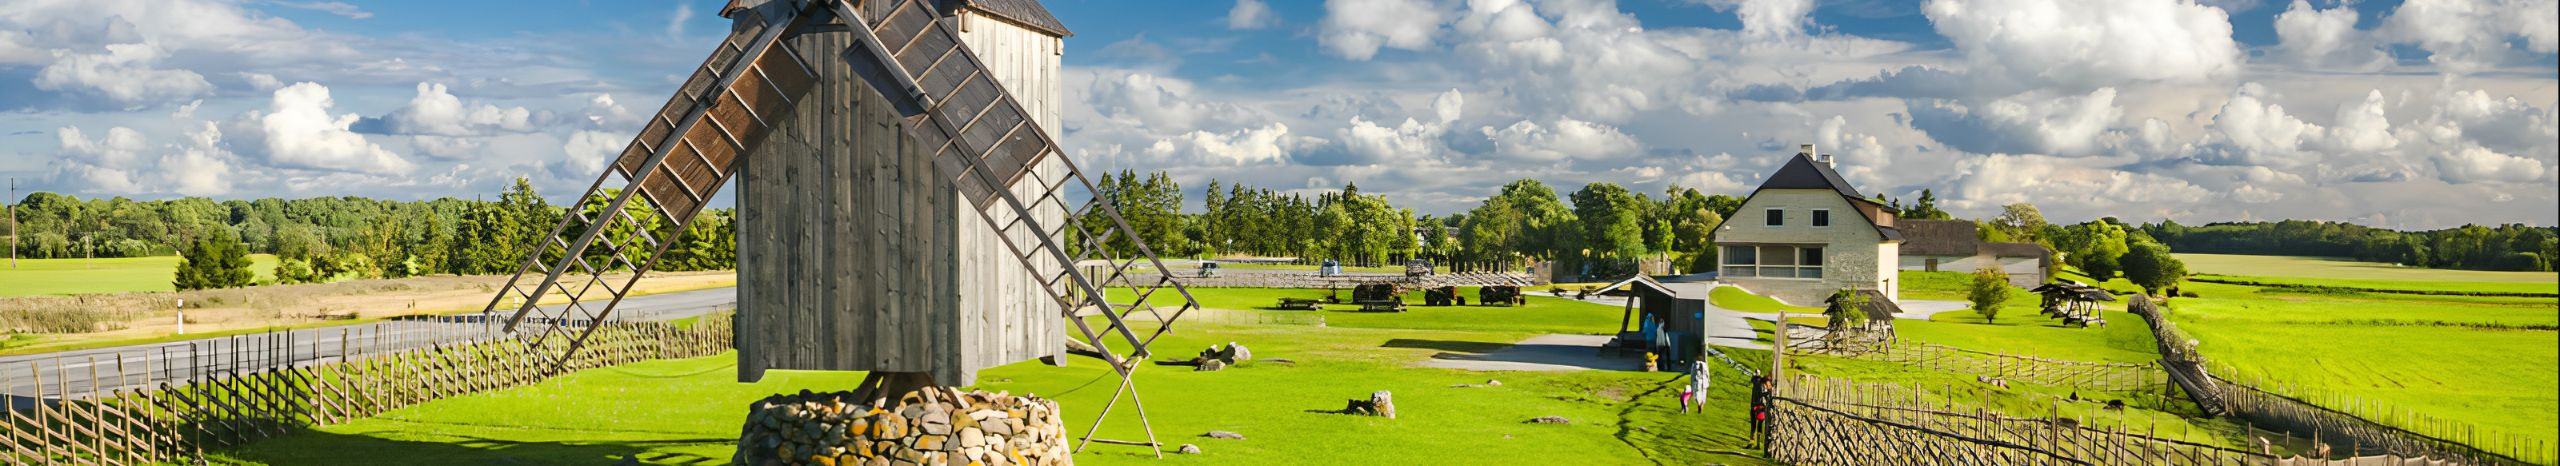 Sakadak OÜ tegeleb Saaremaa kadakapuust unikaalsete käsitöötoodete loomisega, keskendudes aksessuaaridele ja kodukaunistustele.